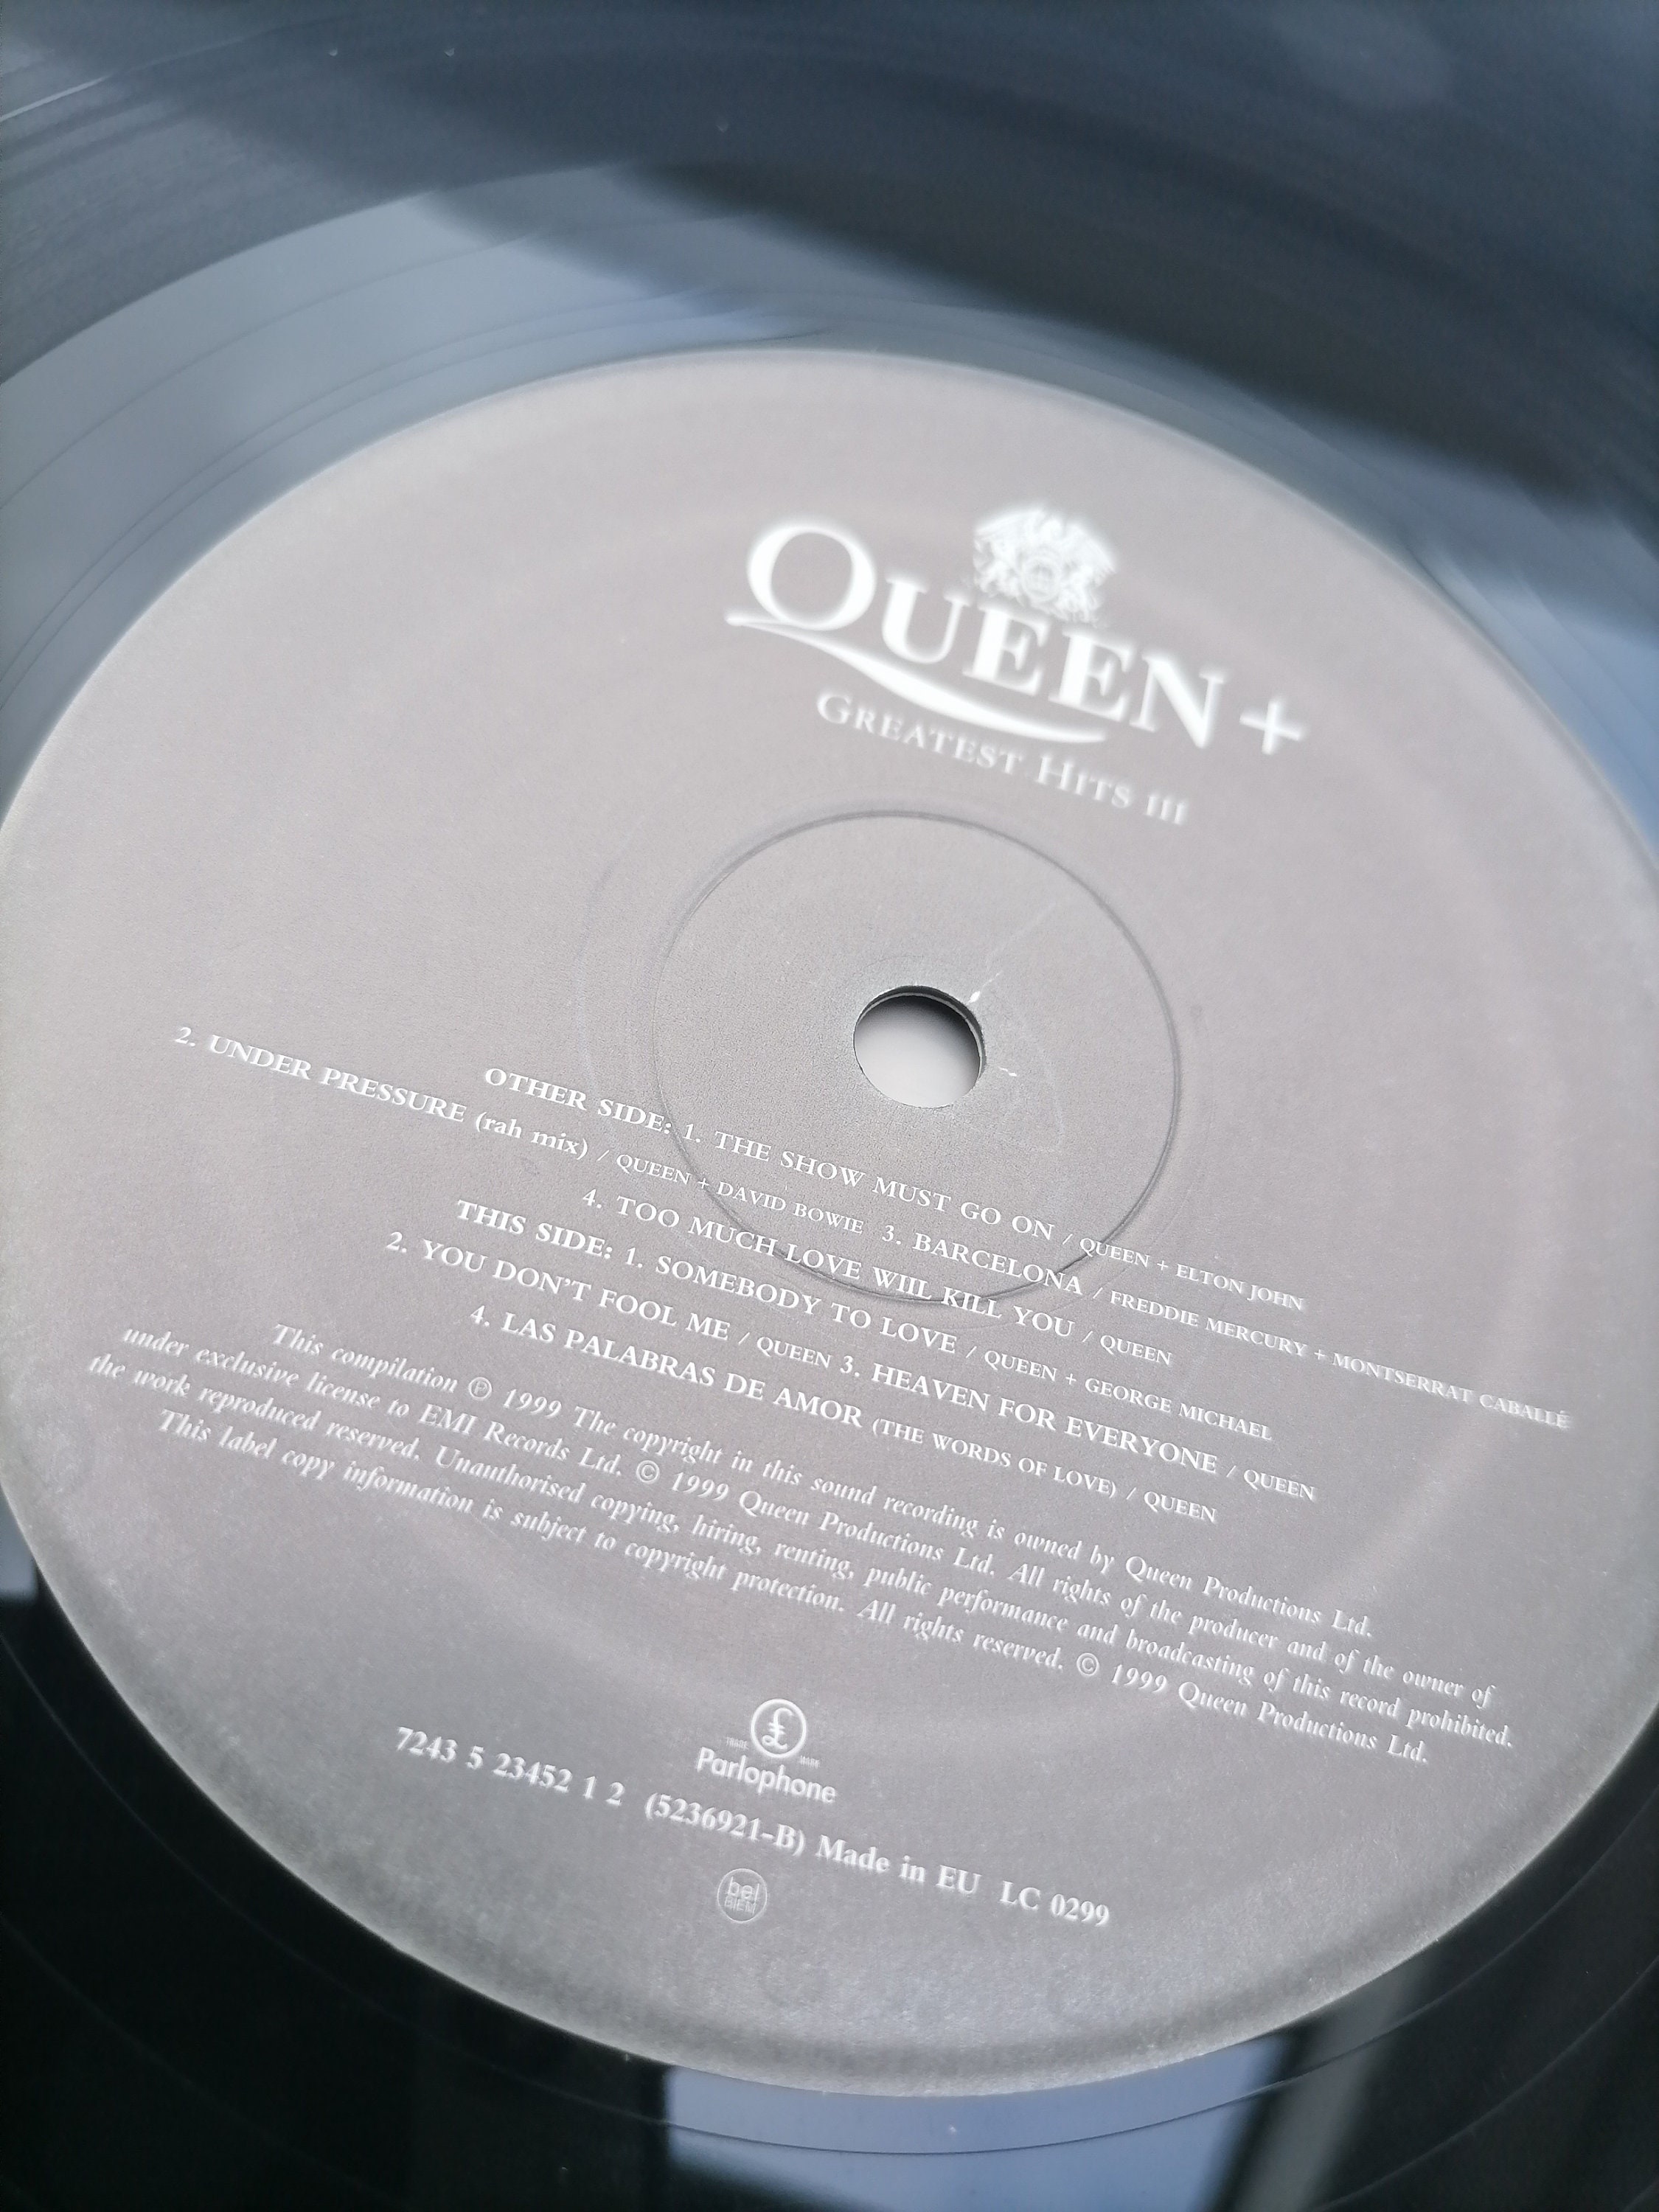 Queen Greatest Hits - Disco de vinilo para álbum de 12.0 in, 33 rpm